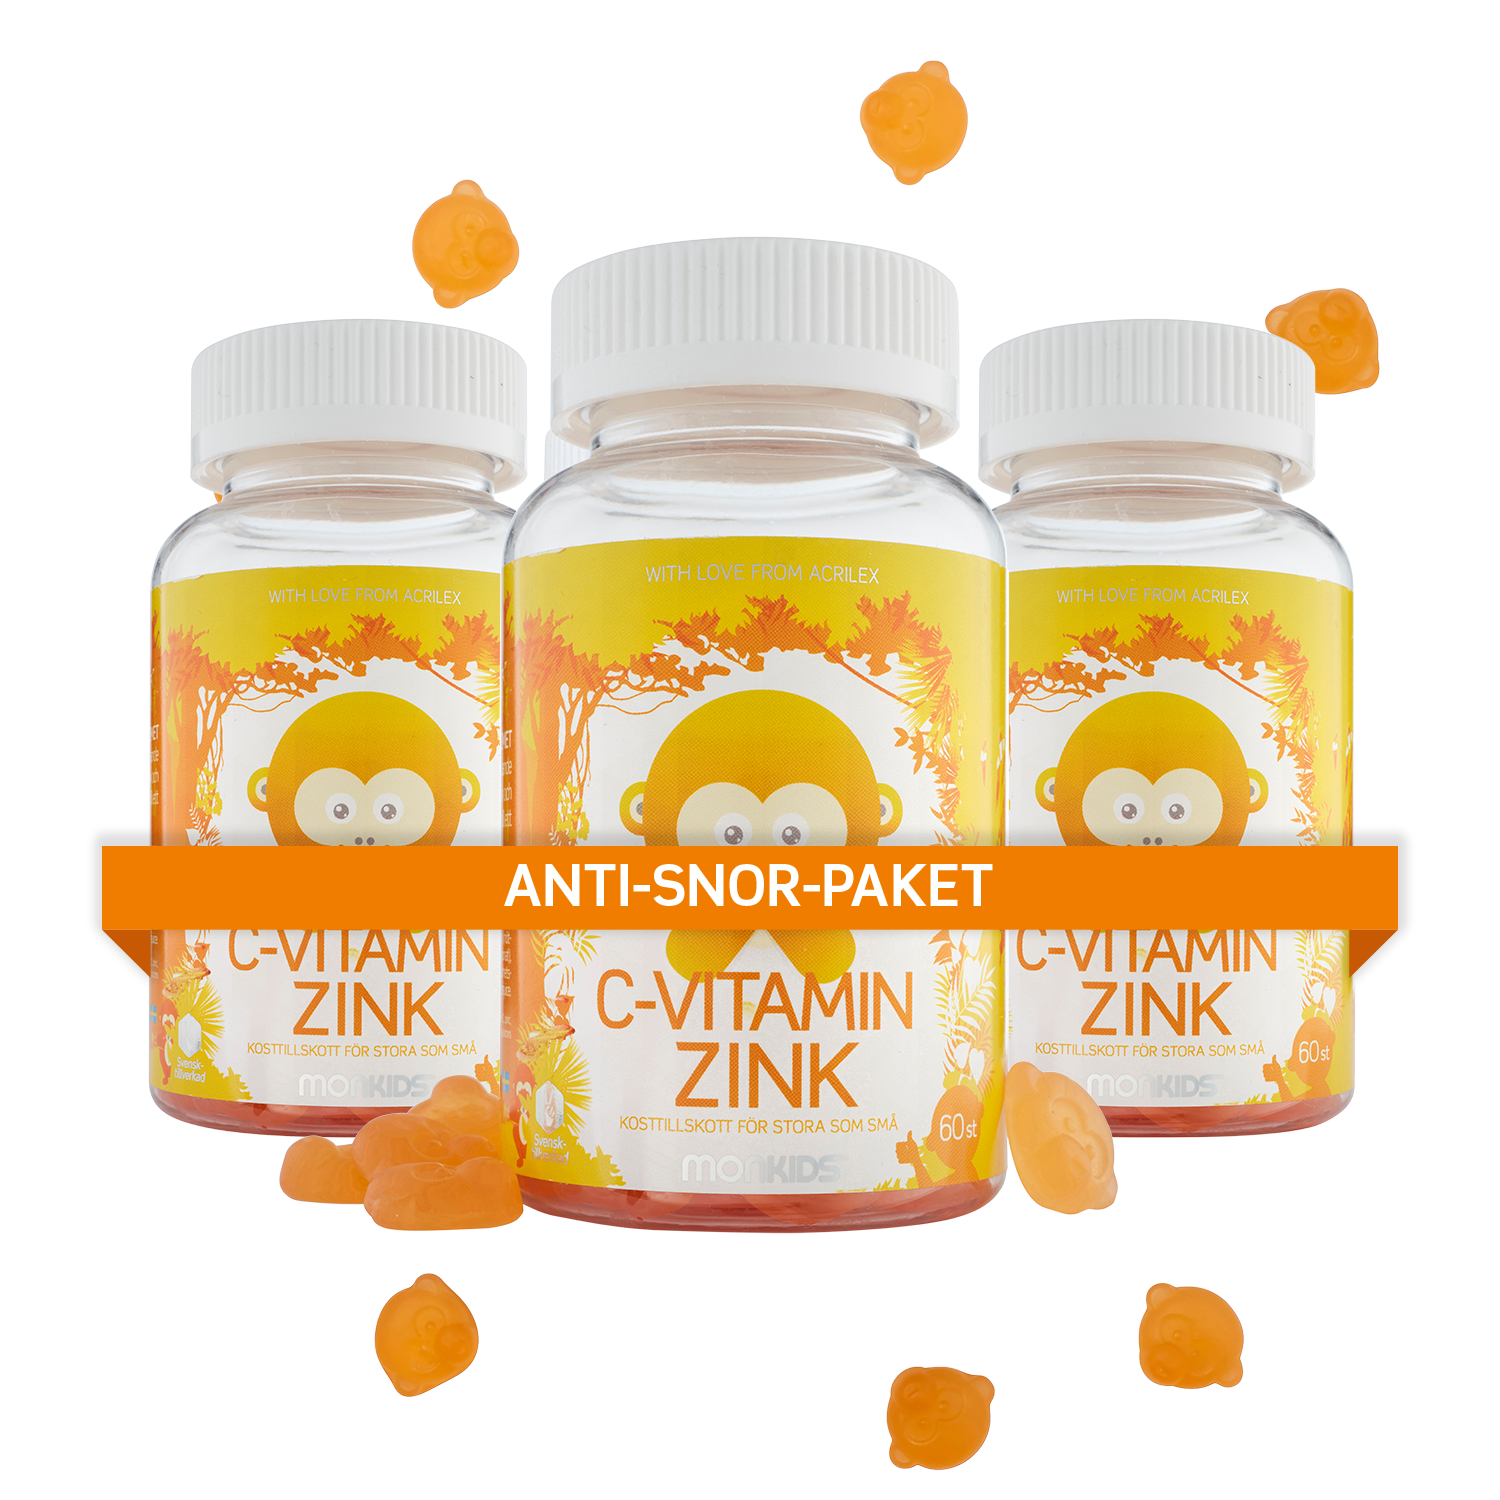 anti-snor-paket 3 x C-vitamin + Zink